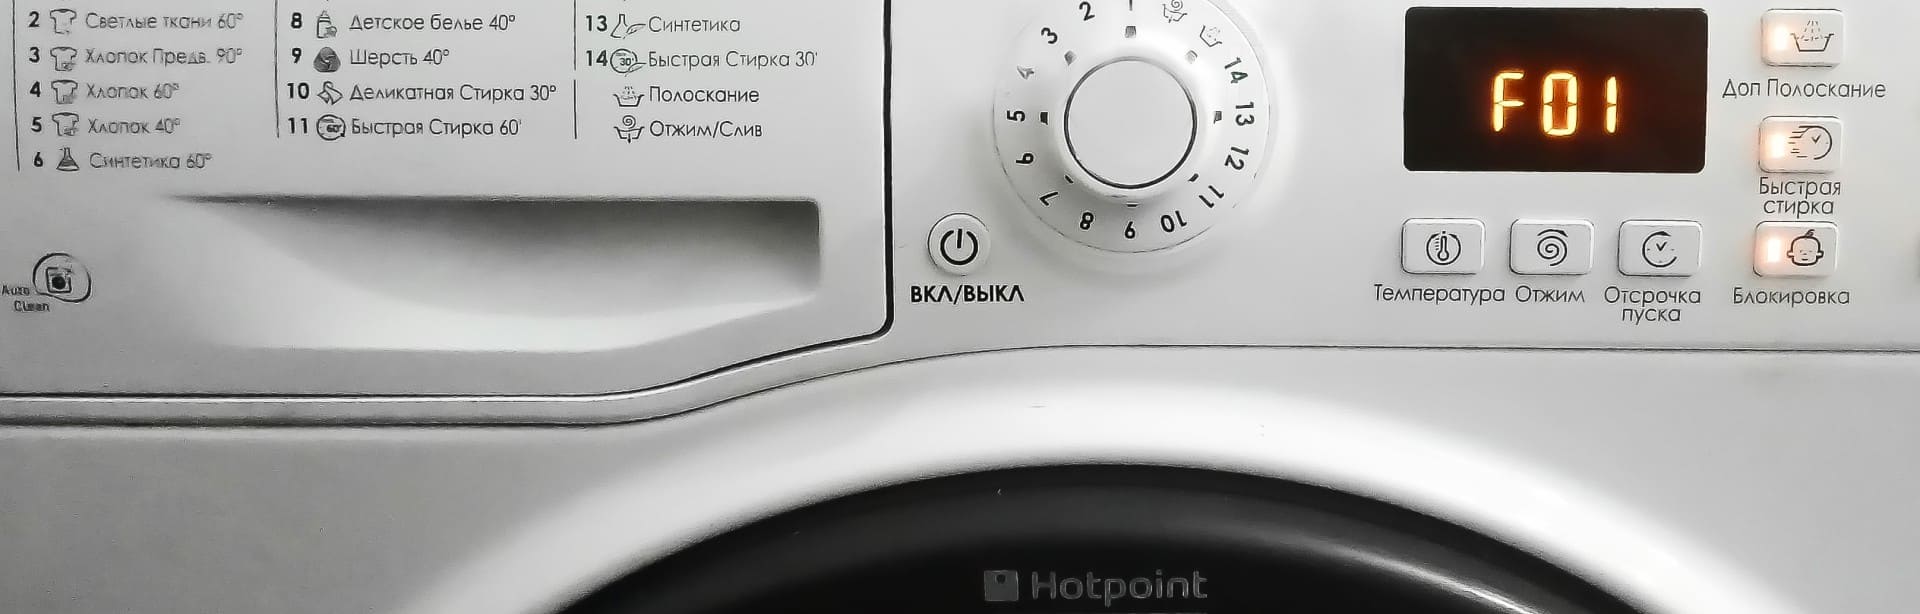 Замена подшипников в стиральной машине Hotpoint-Ariston в Астрахани